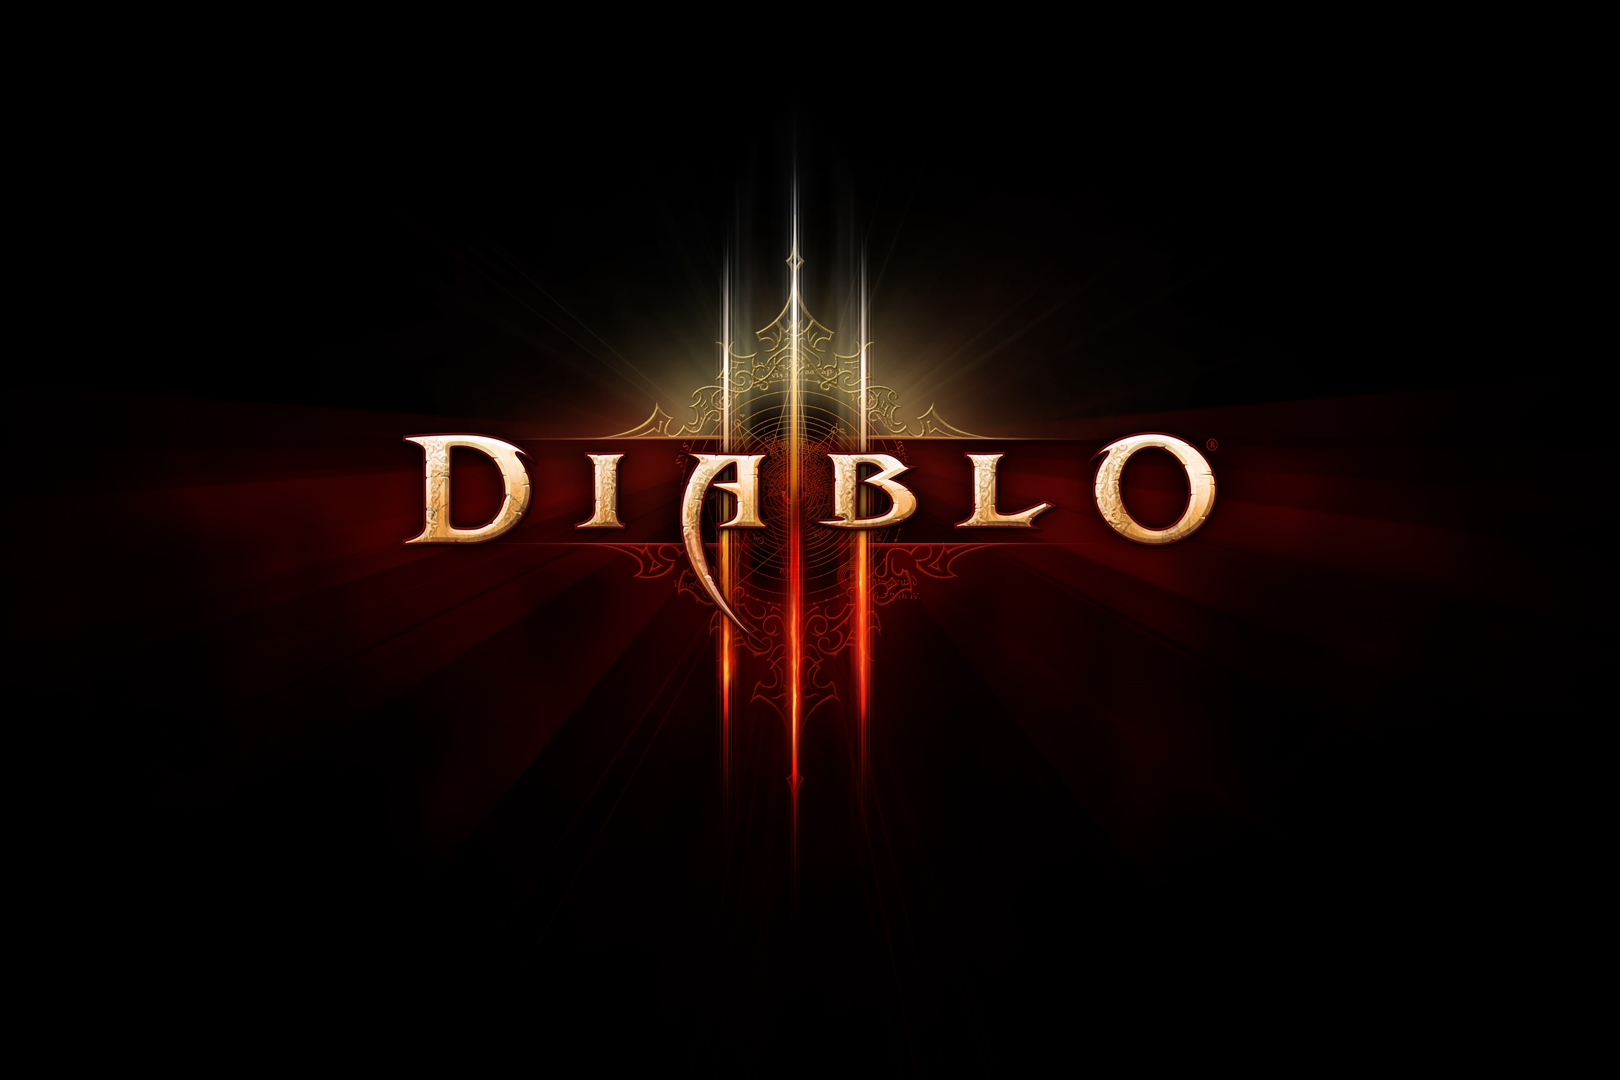 diablo 3 patch 2.3 release date